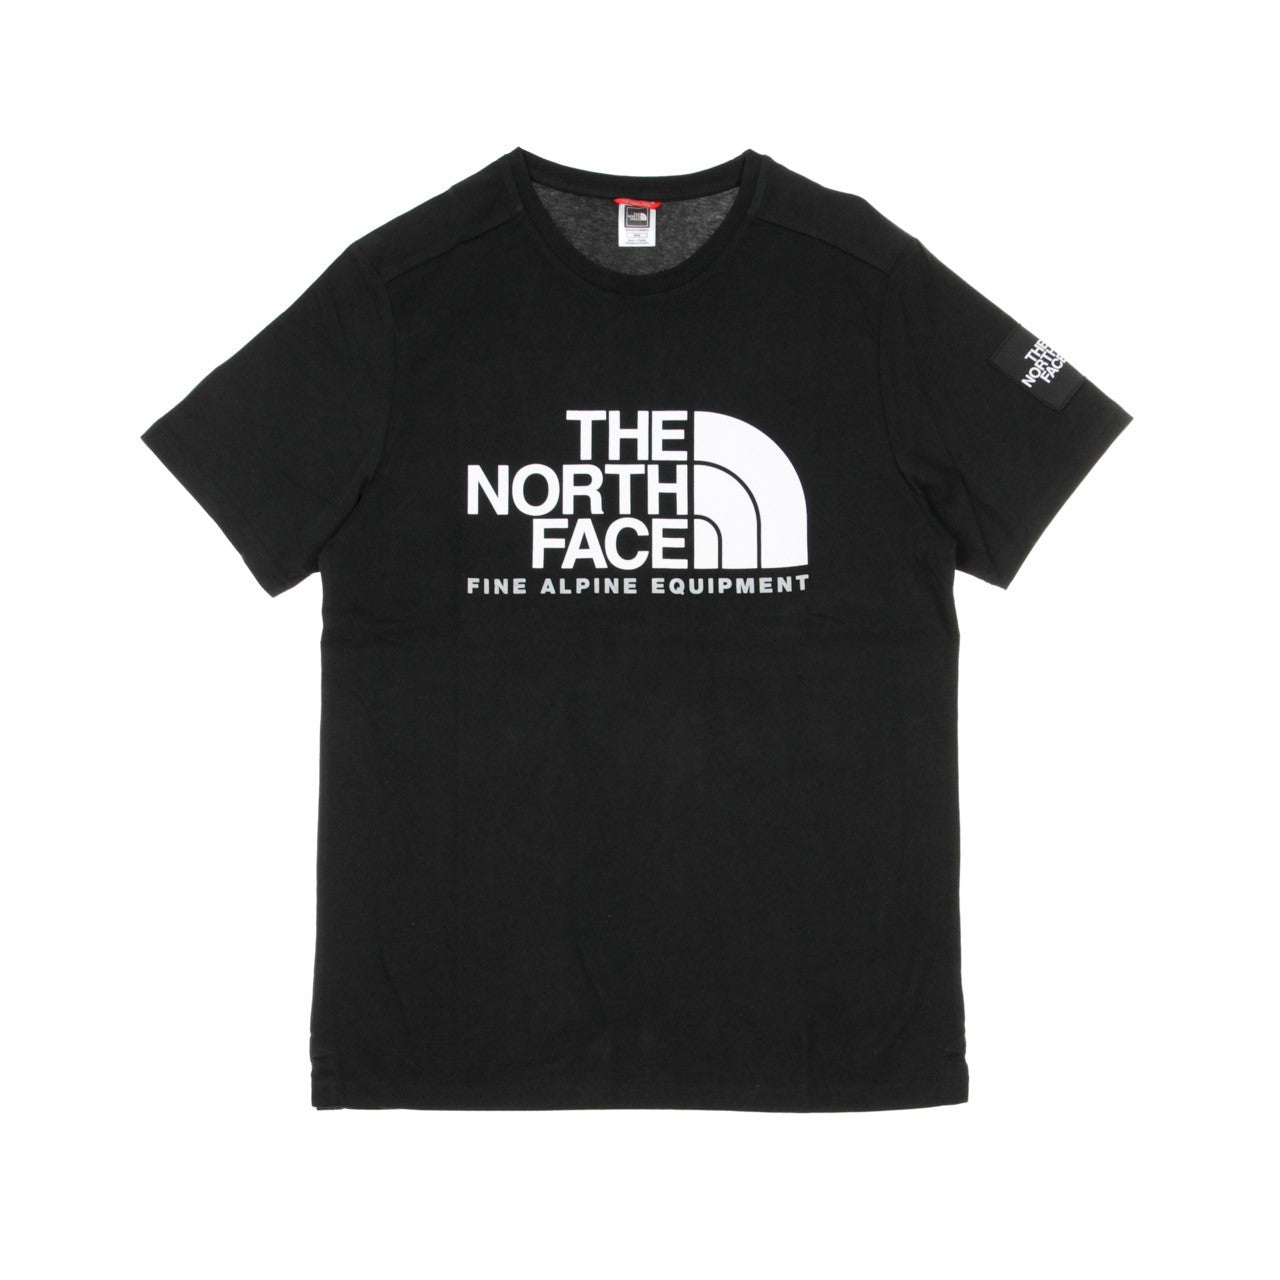 The North Face, Maglietta Uomo Fine Alp Tee 2, Black